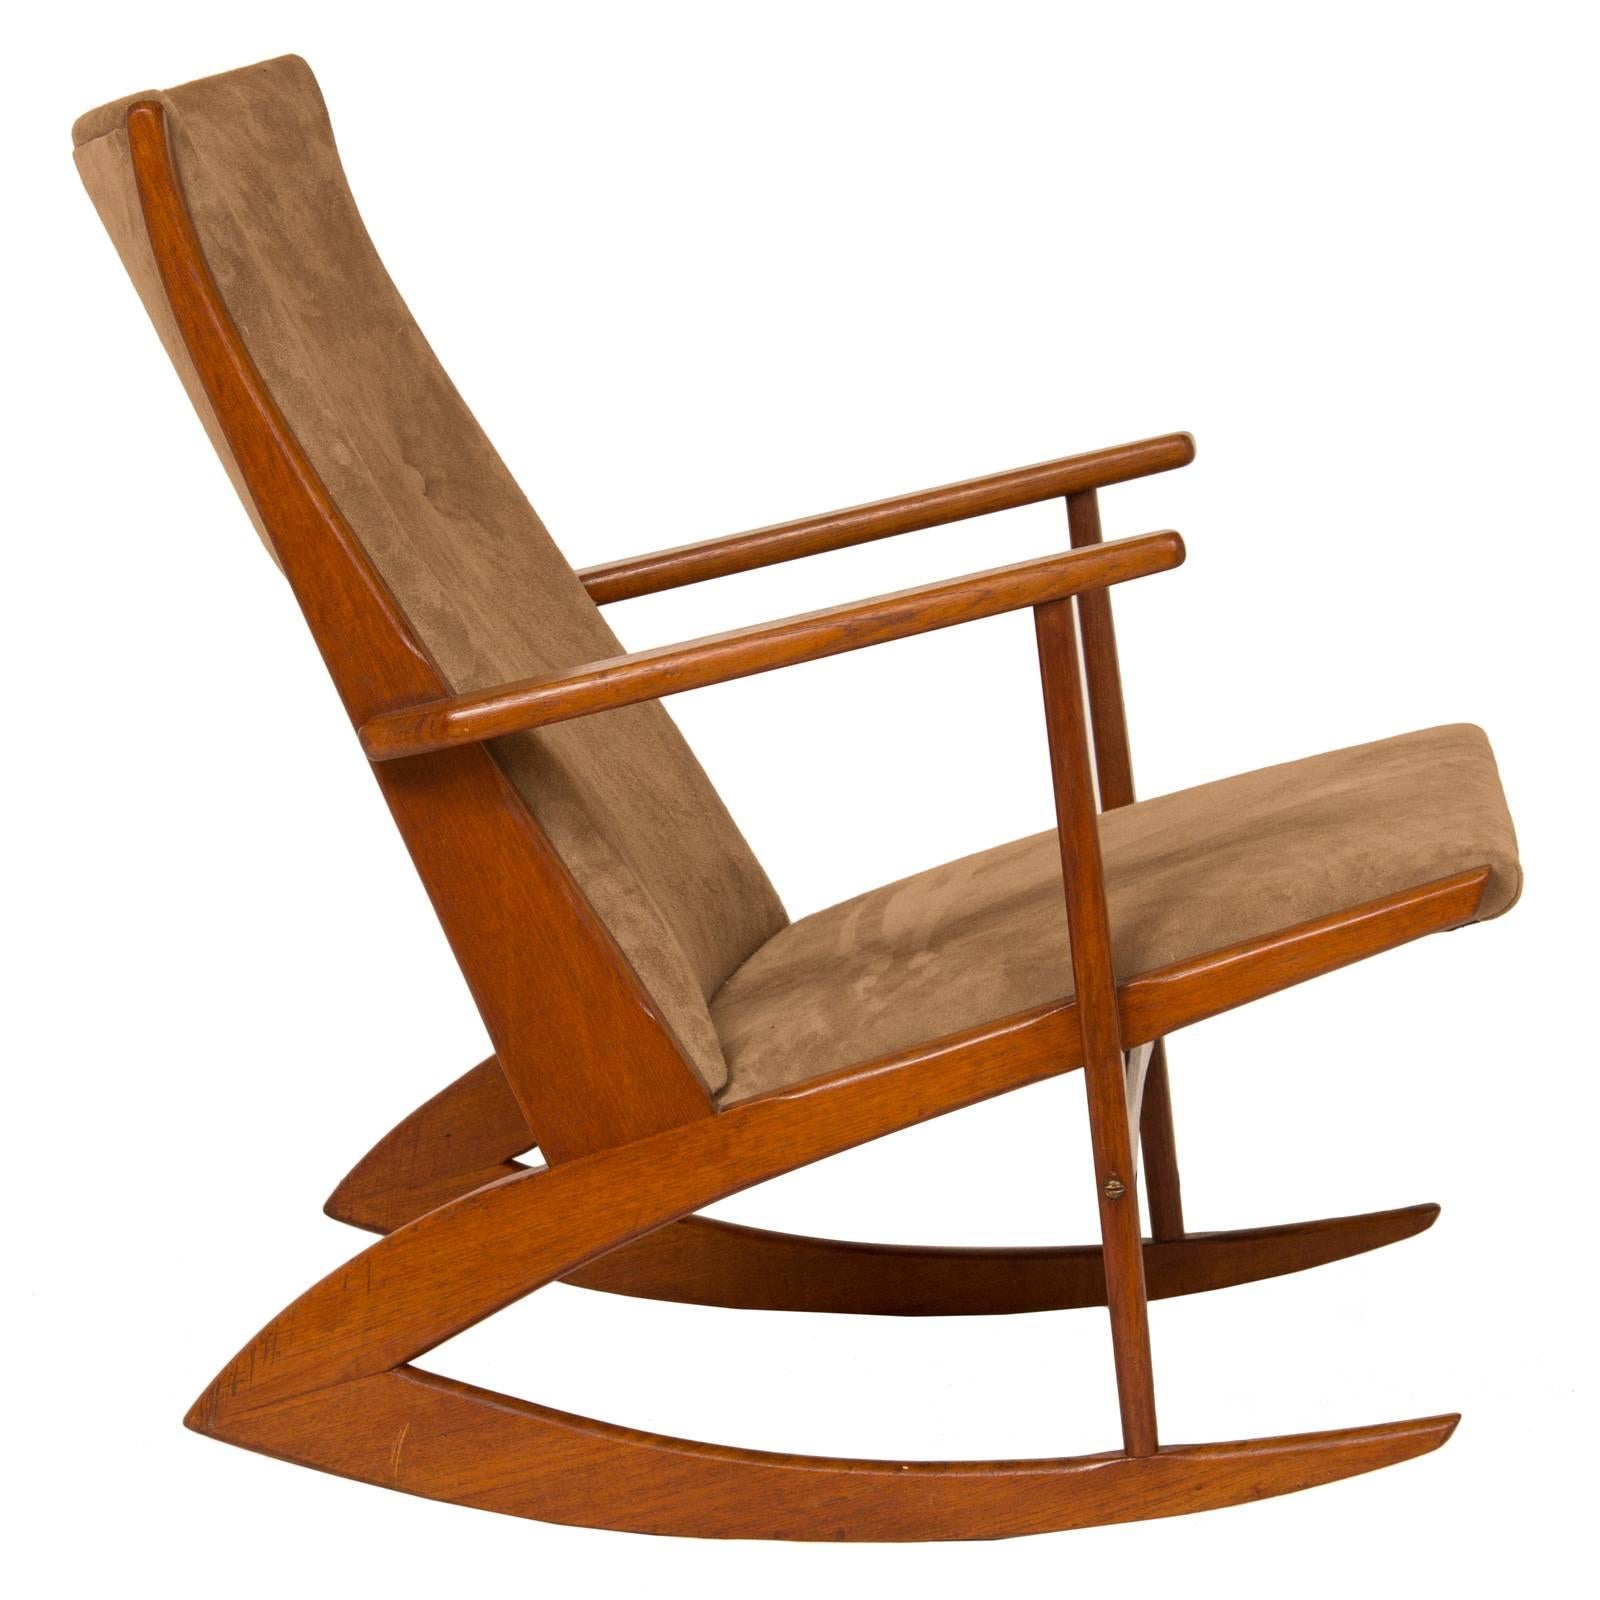 1950s teak and suede Soren Georg Jensen rocking chair.